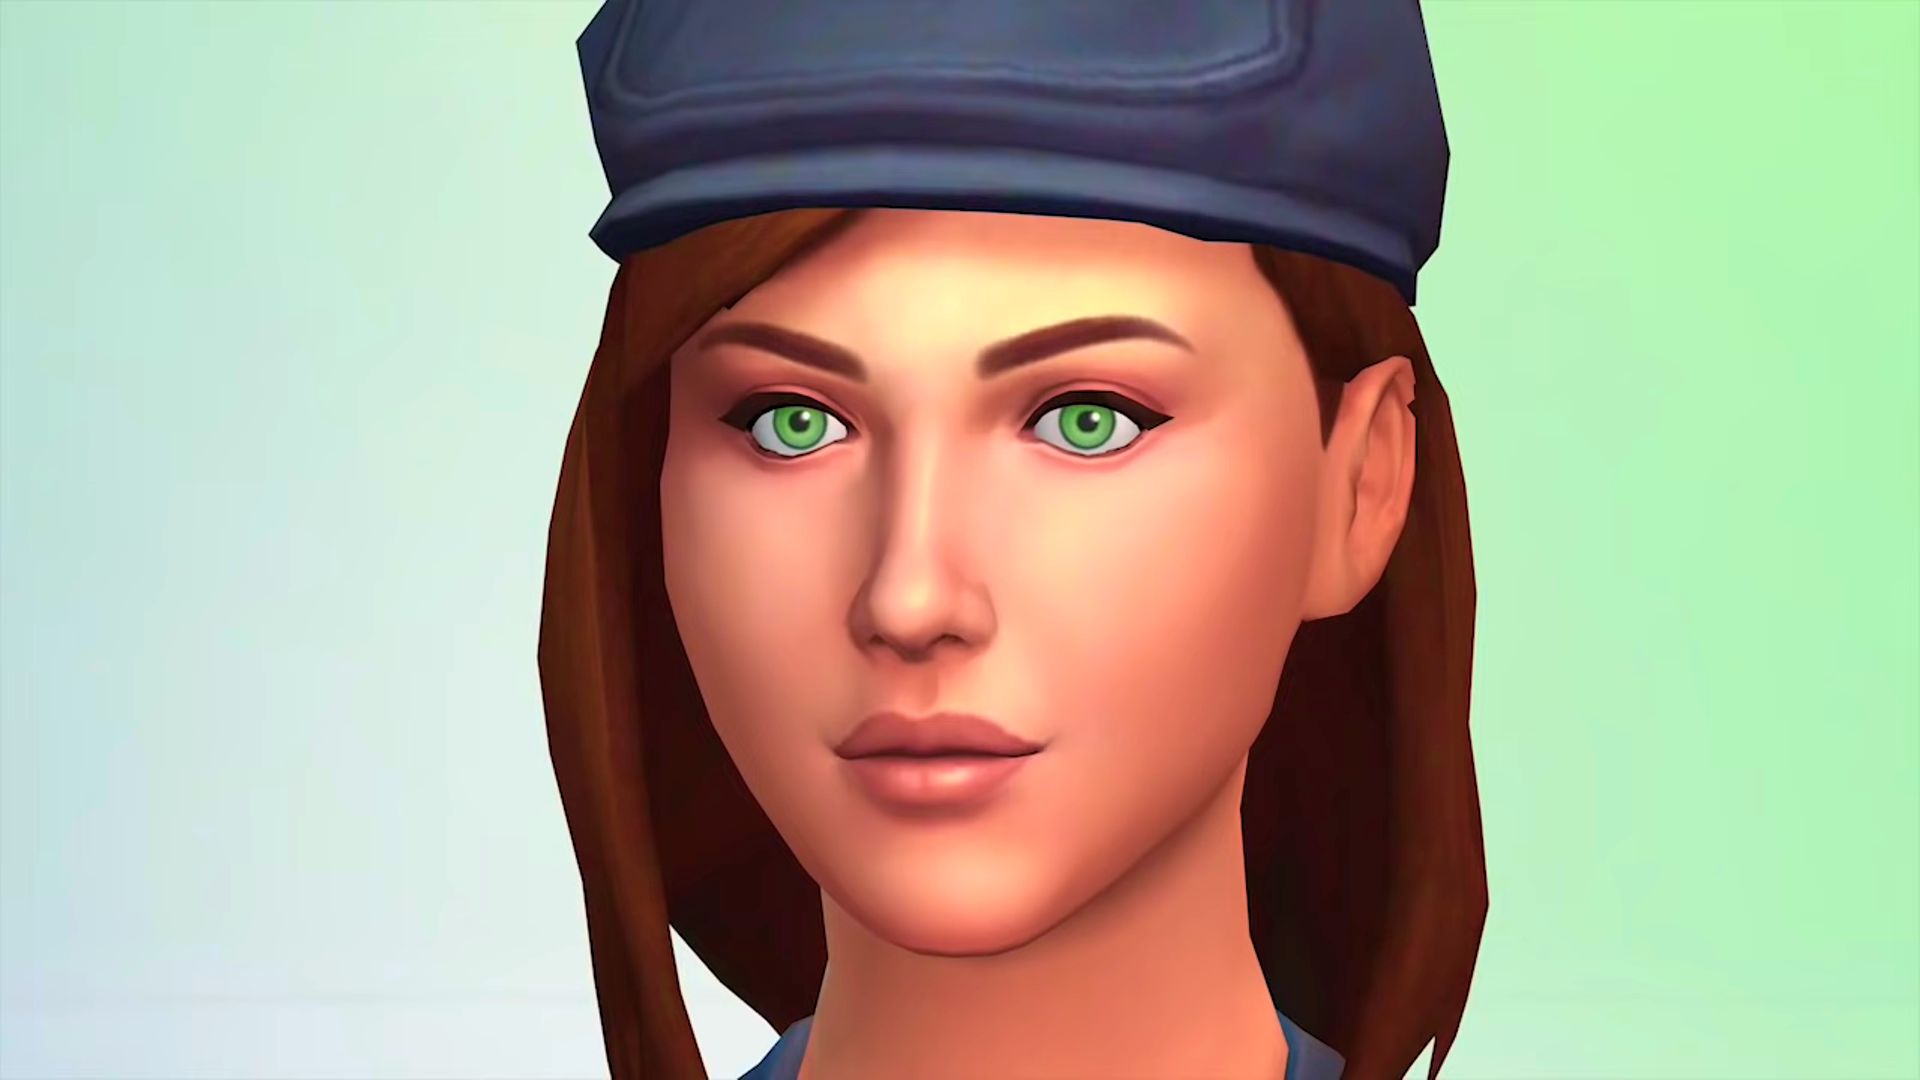 De Sims 4 mod voegt een ‘Royals Pack’ toe dat wordt geleverd met vooraf gebouwde eigenschappen